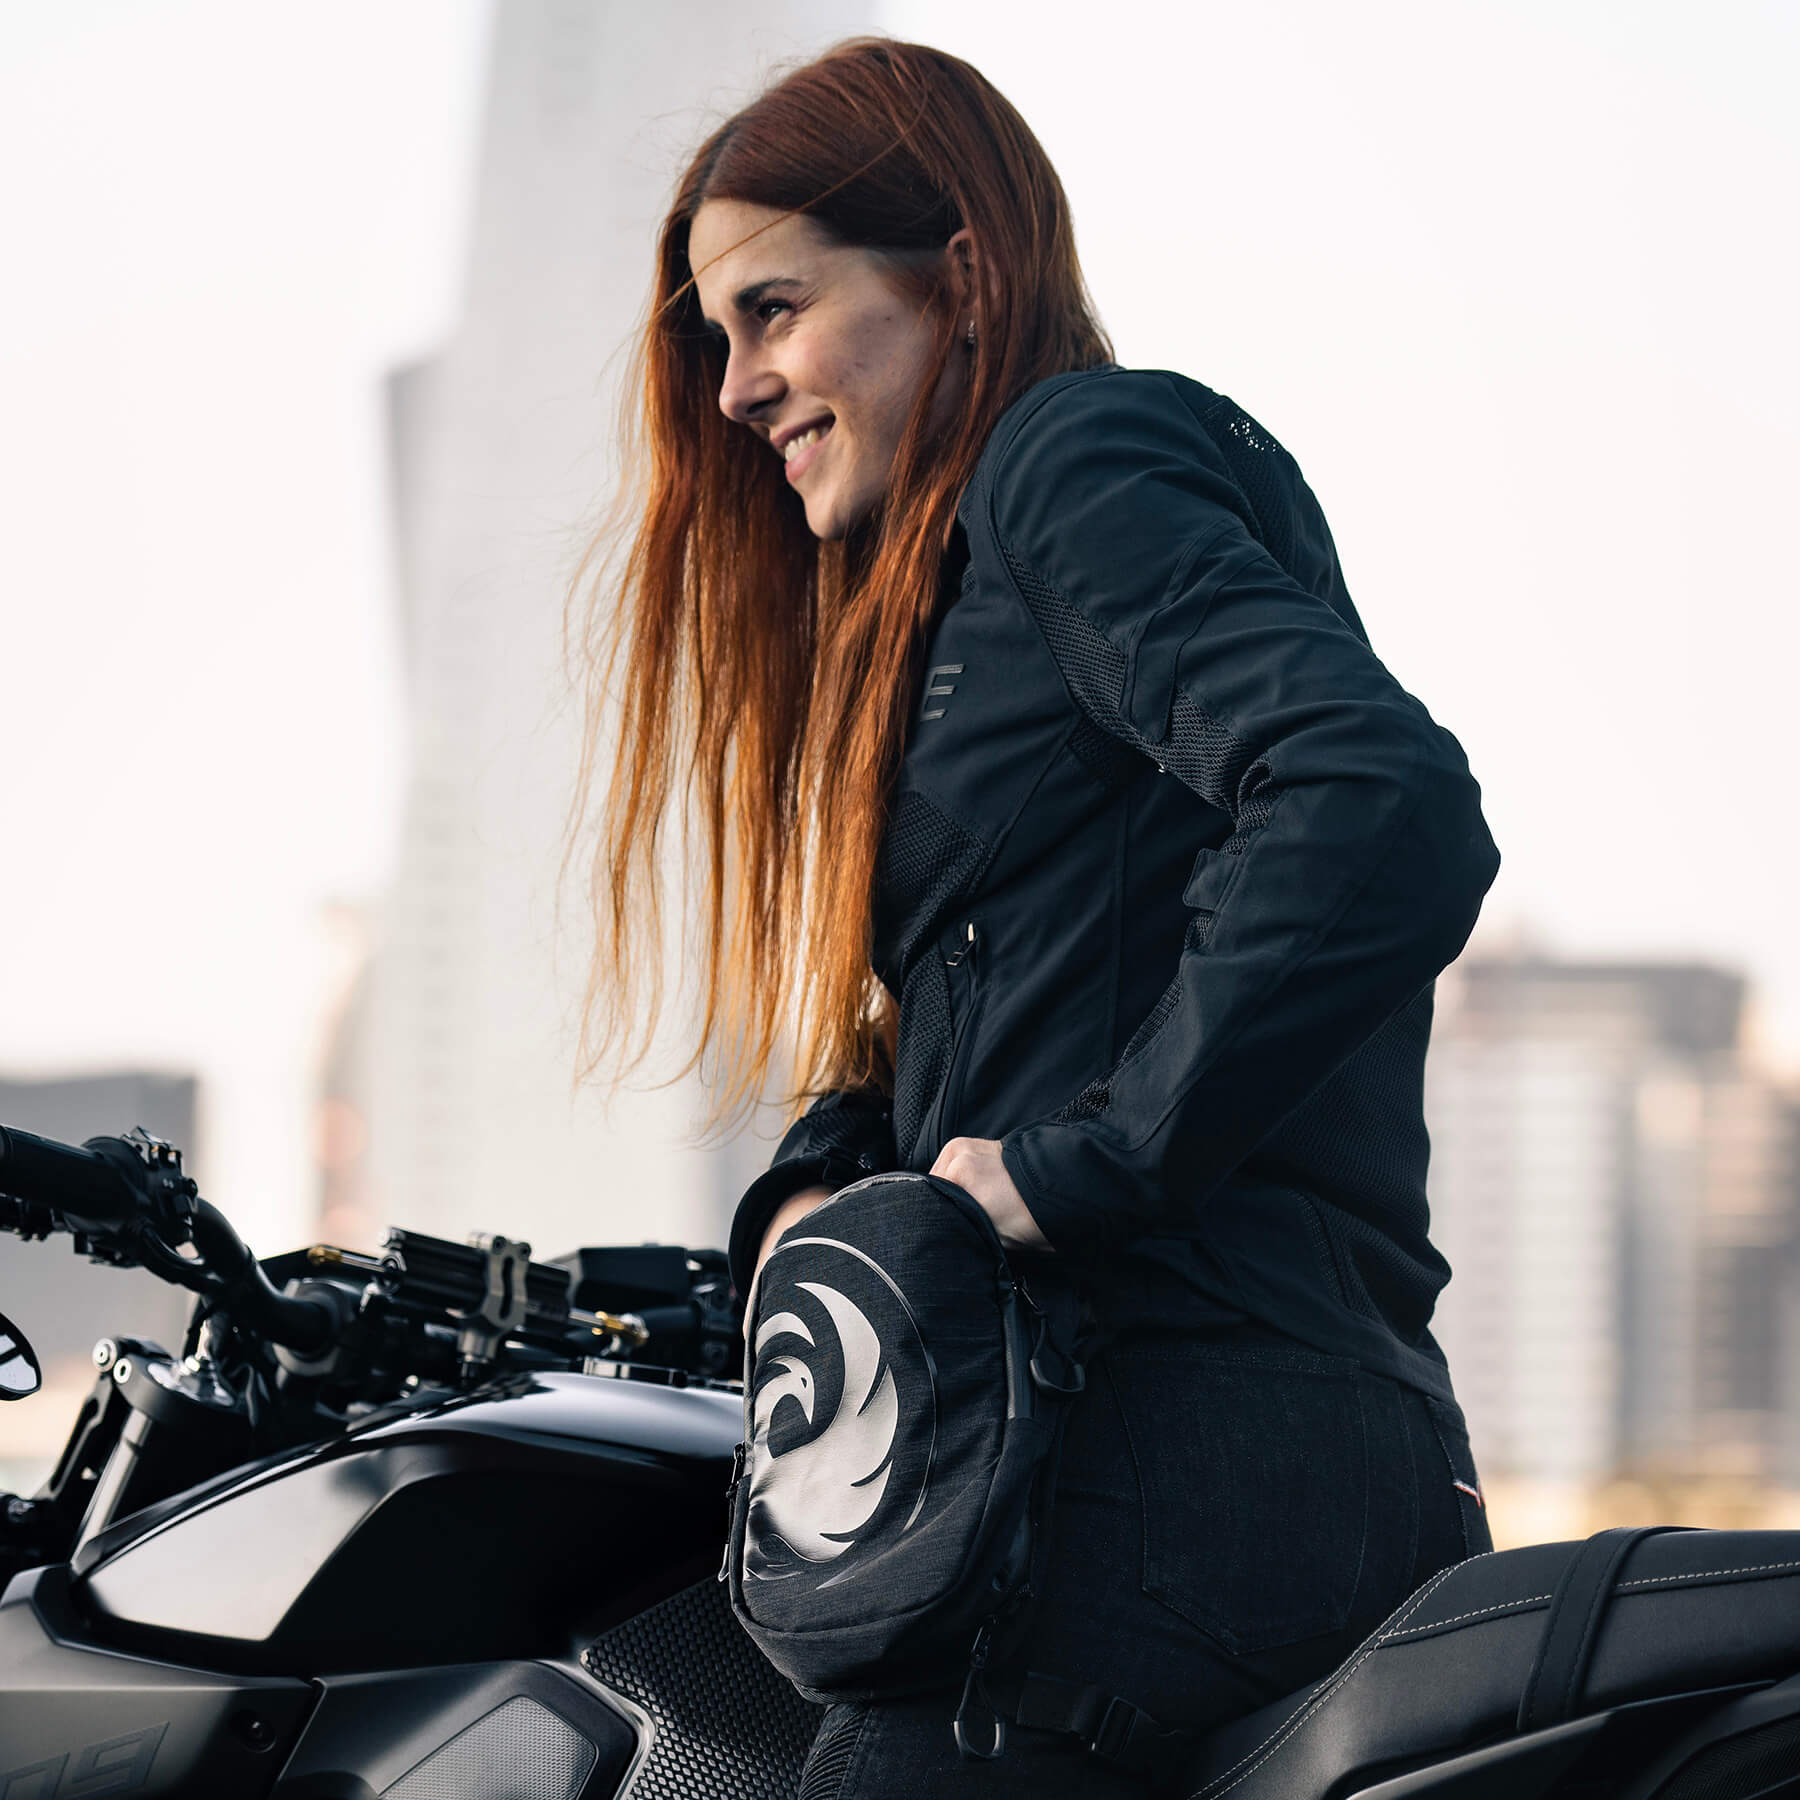 Women’s Motorcycle Gear